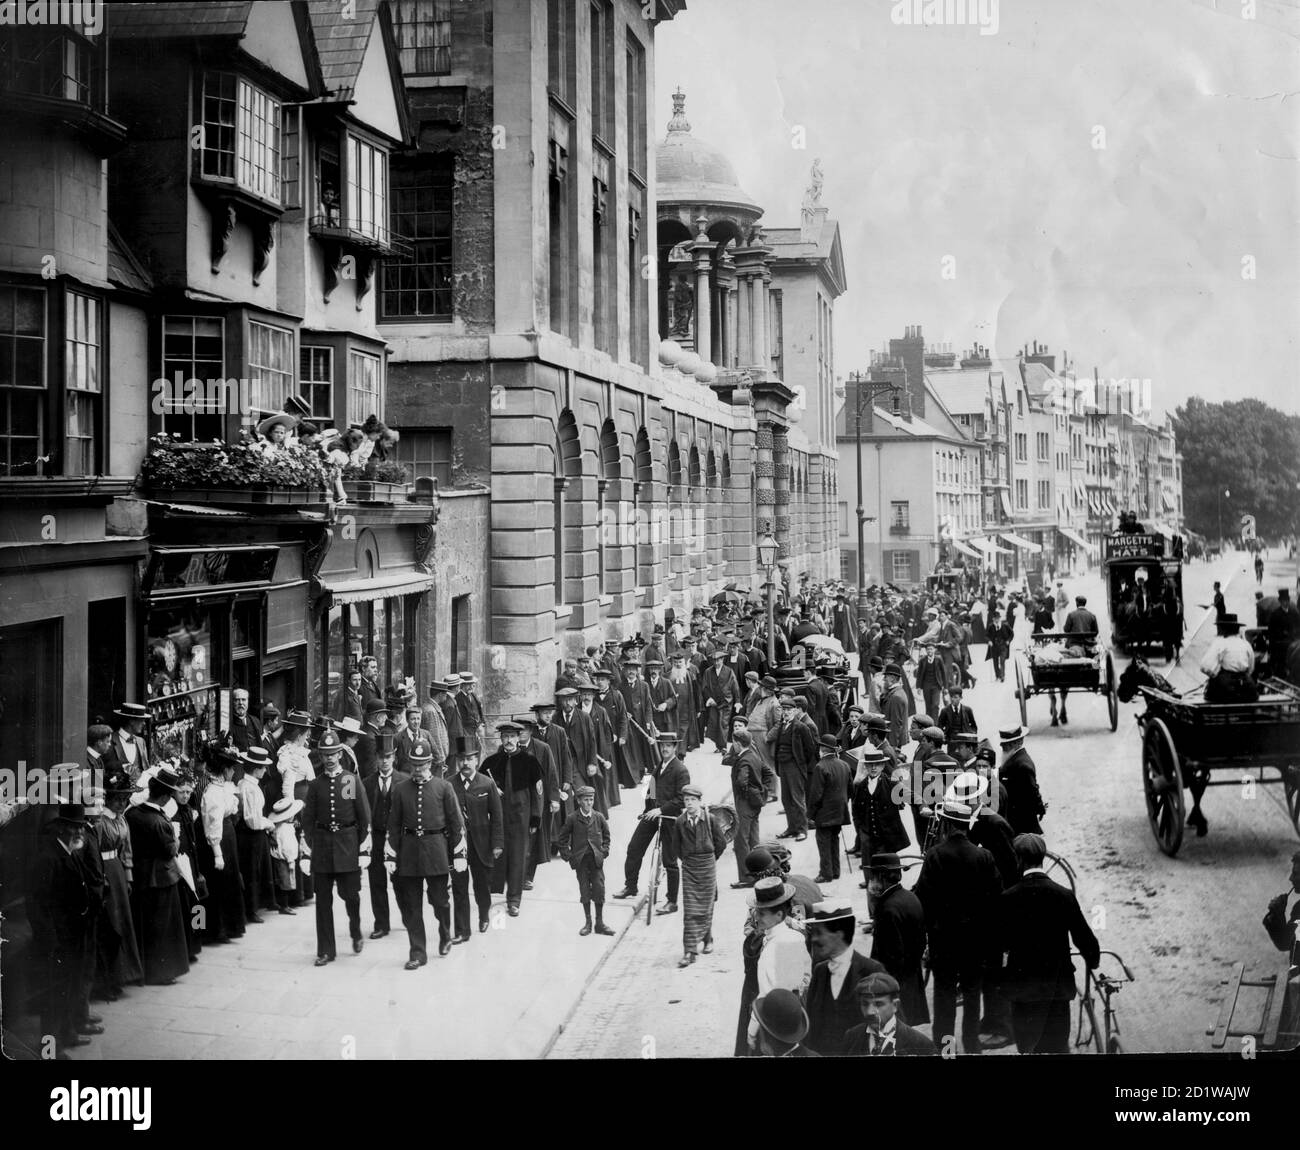 High Street, Oxford, Oxfordshire. Una vista de la calle alta con el Queen's College a la izquierda, mostrando la procesión de la Universidad de Encaenia en su camino al Teatro Sheldonian para una ceremonia. Foto de stock